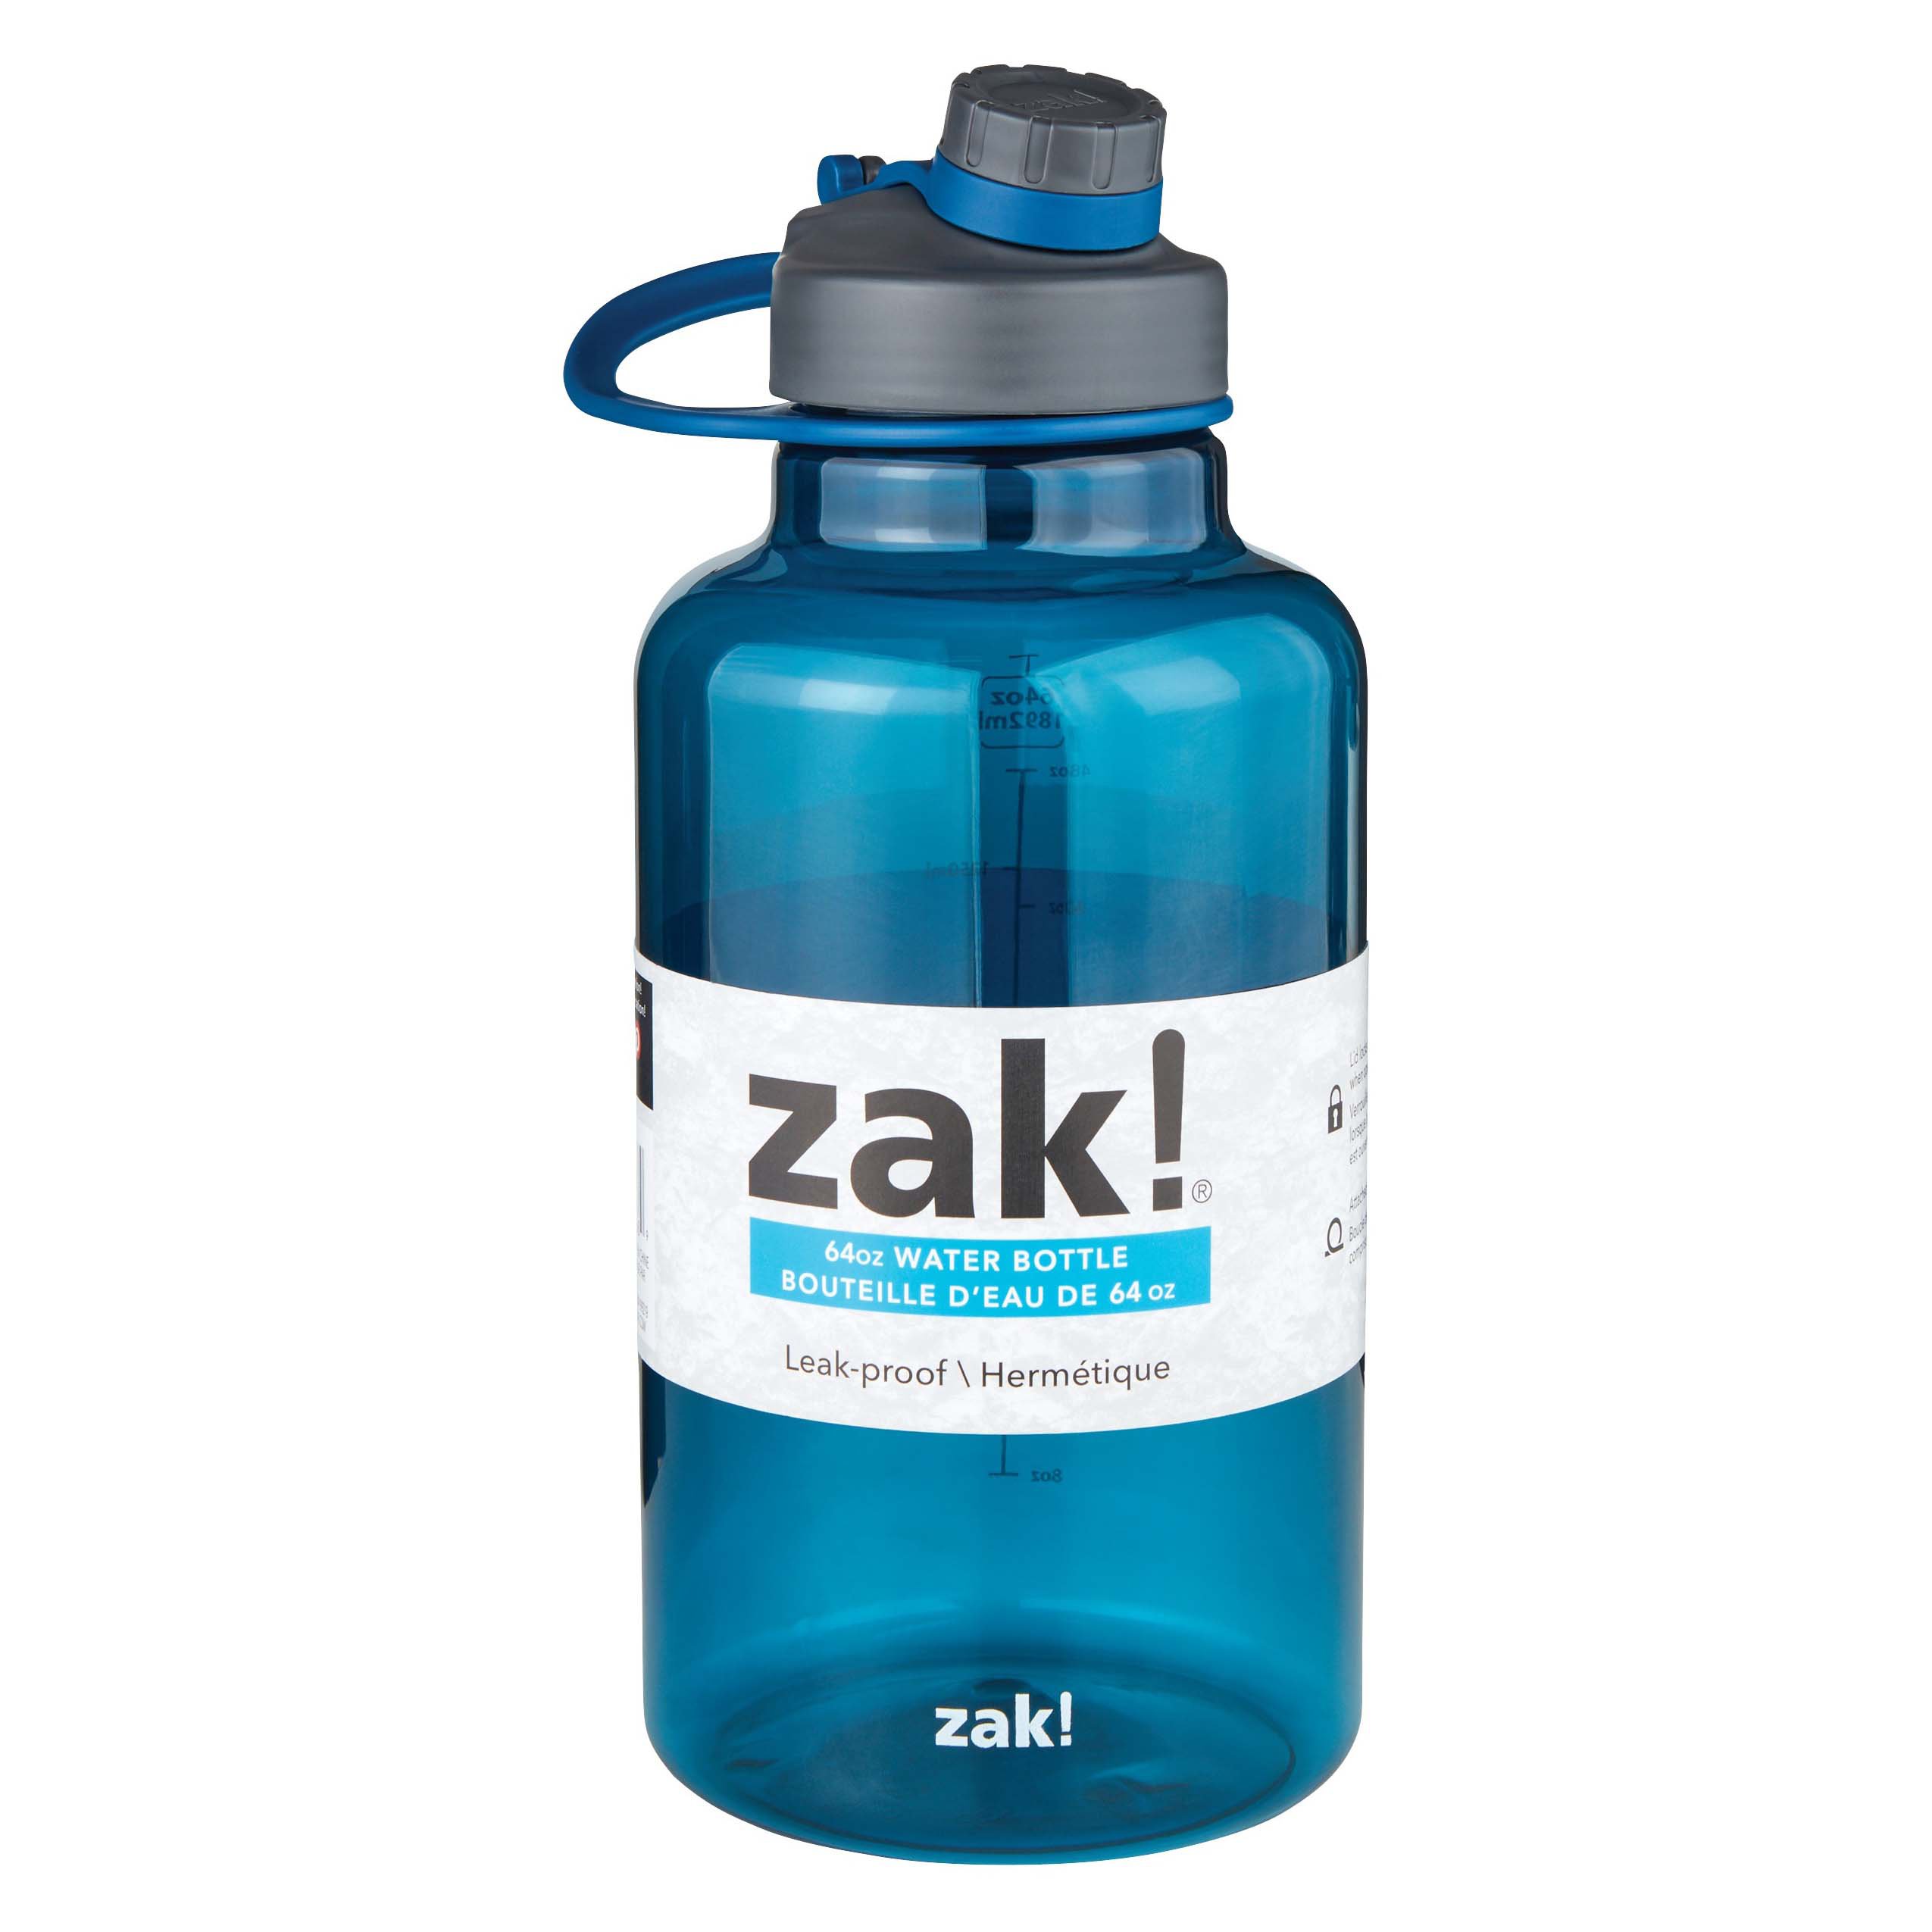 zak! designs Water Bottle